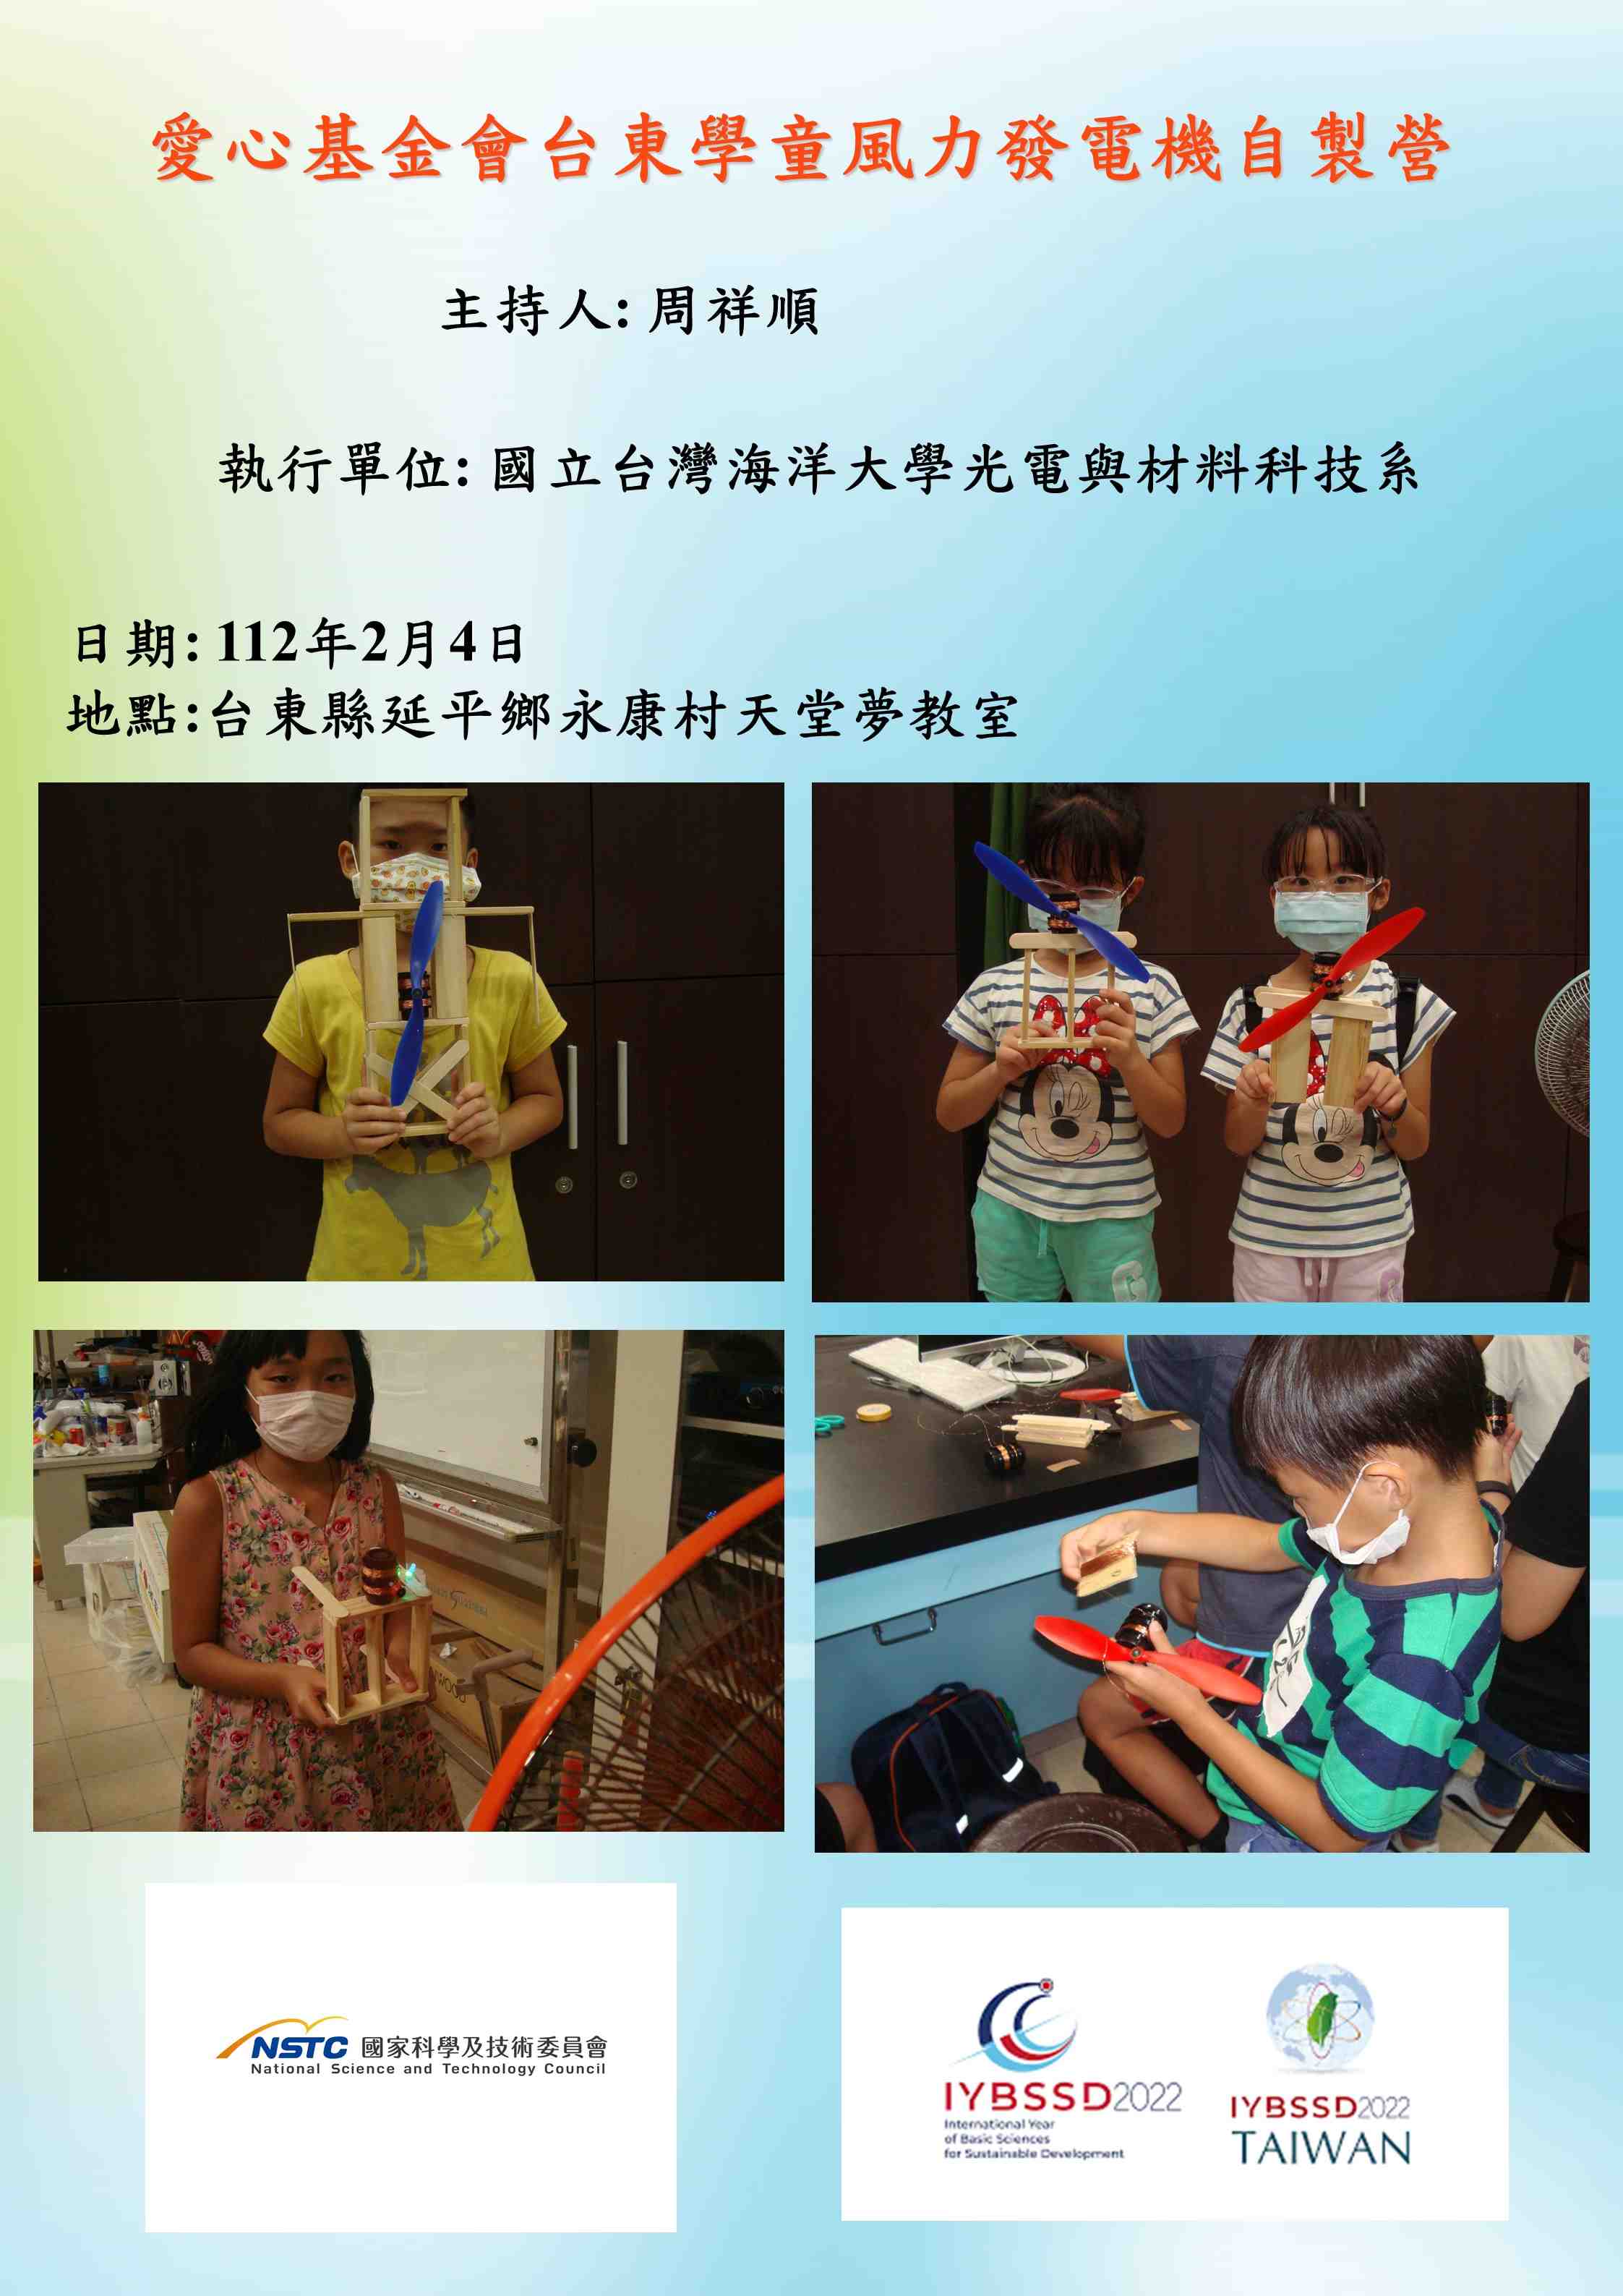 愛心基金會台東學童風力發電機自製營宣傳用圖片/海報